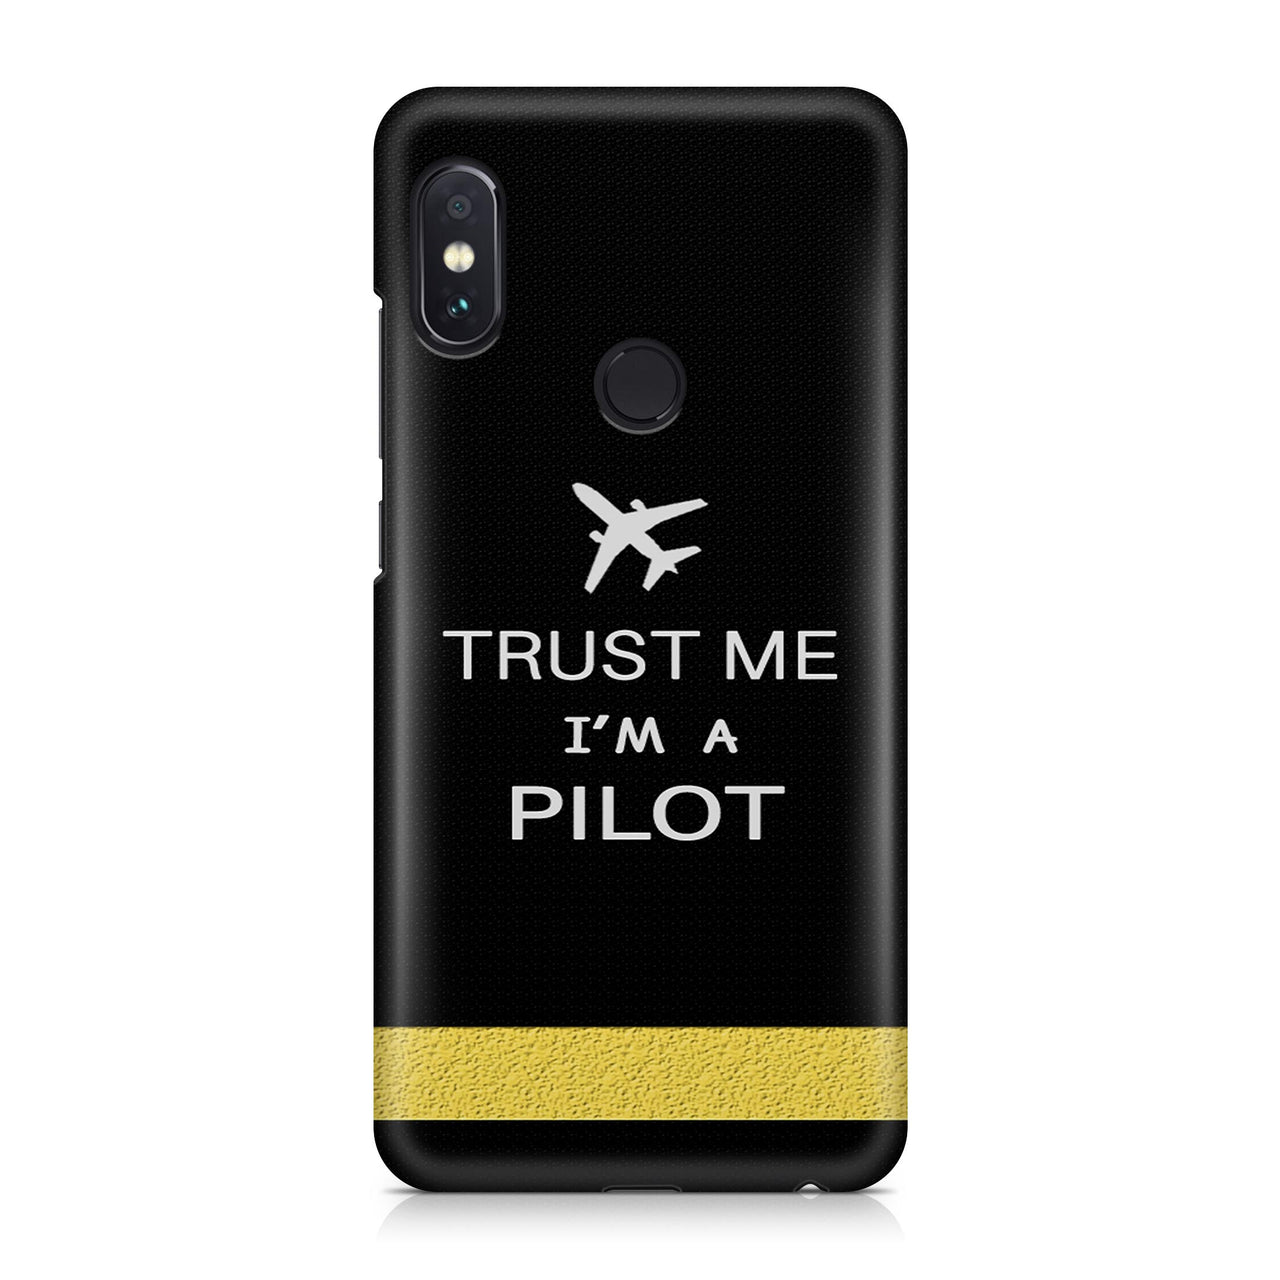 Trust Me I'm a Pilot (Epaulette) Designed Xiaomi Cases